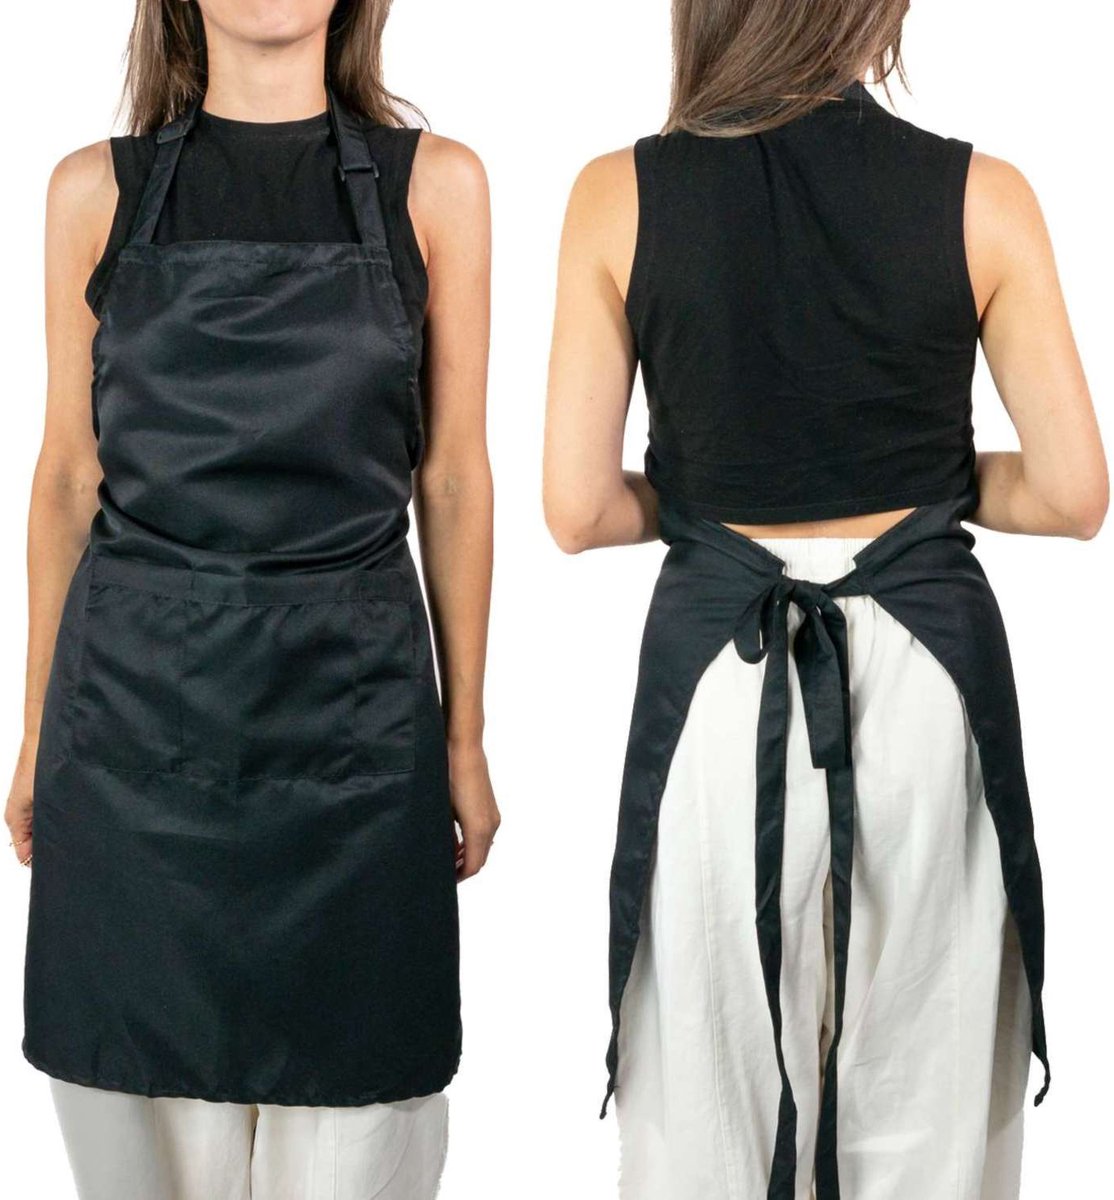 Intirilife 2-delige set Kookschorten schorten van zwart polyester voor mannen en vrouwen - ter bescherming tegen vlekken tijdens het koken